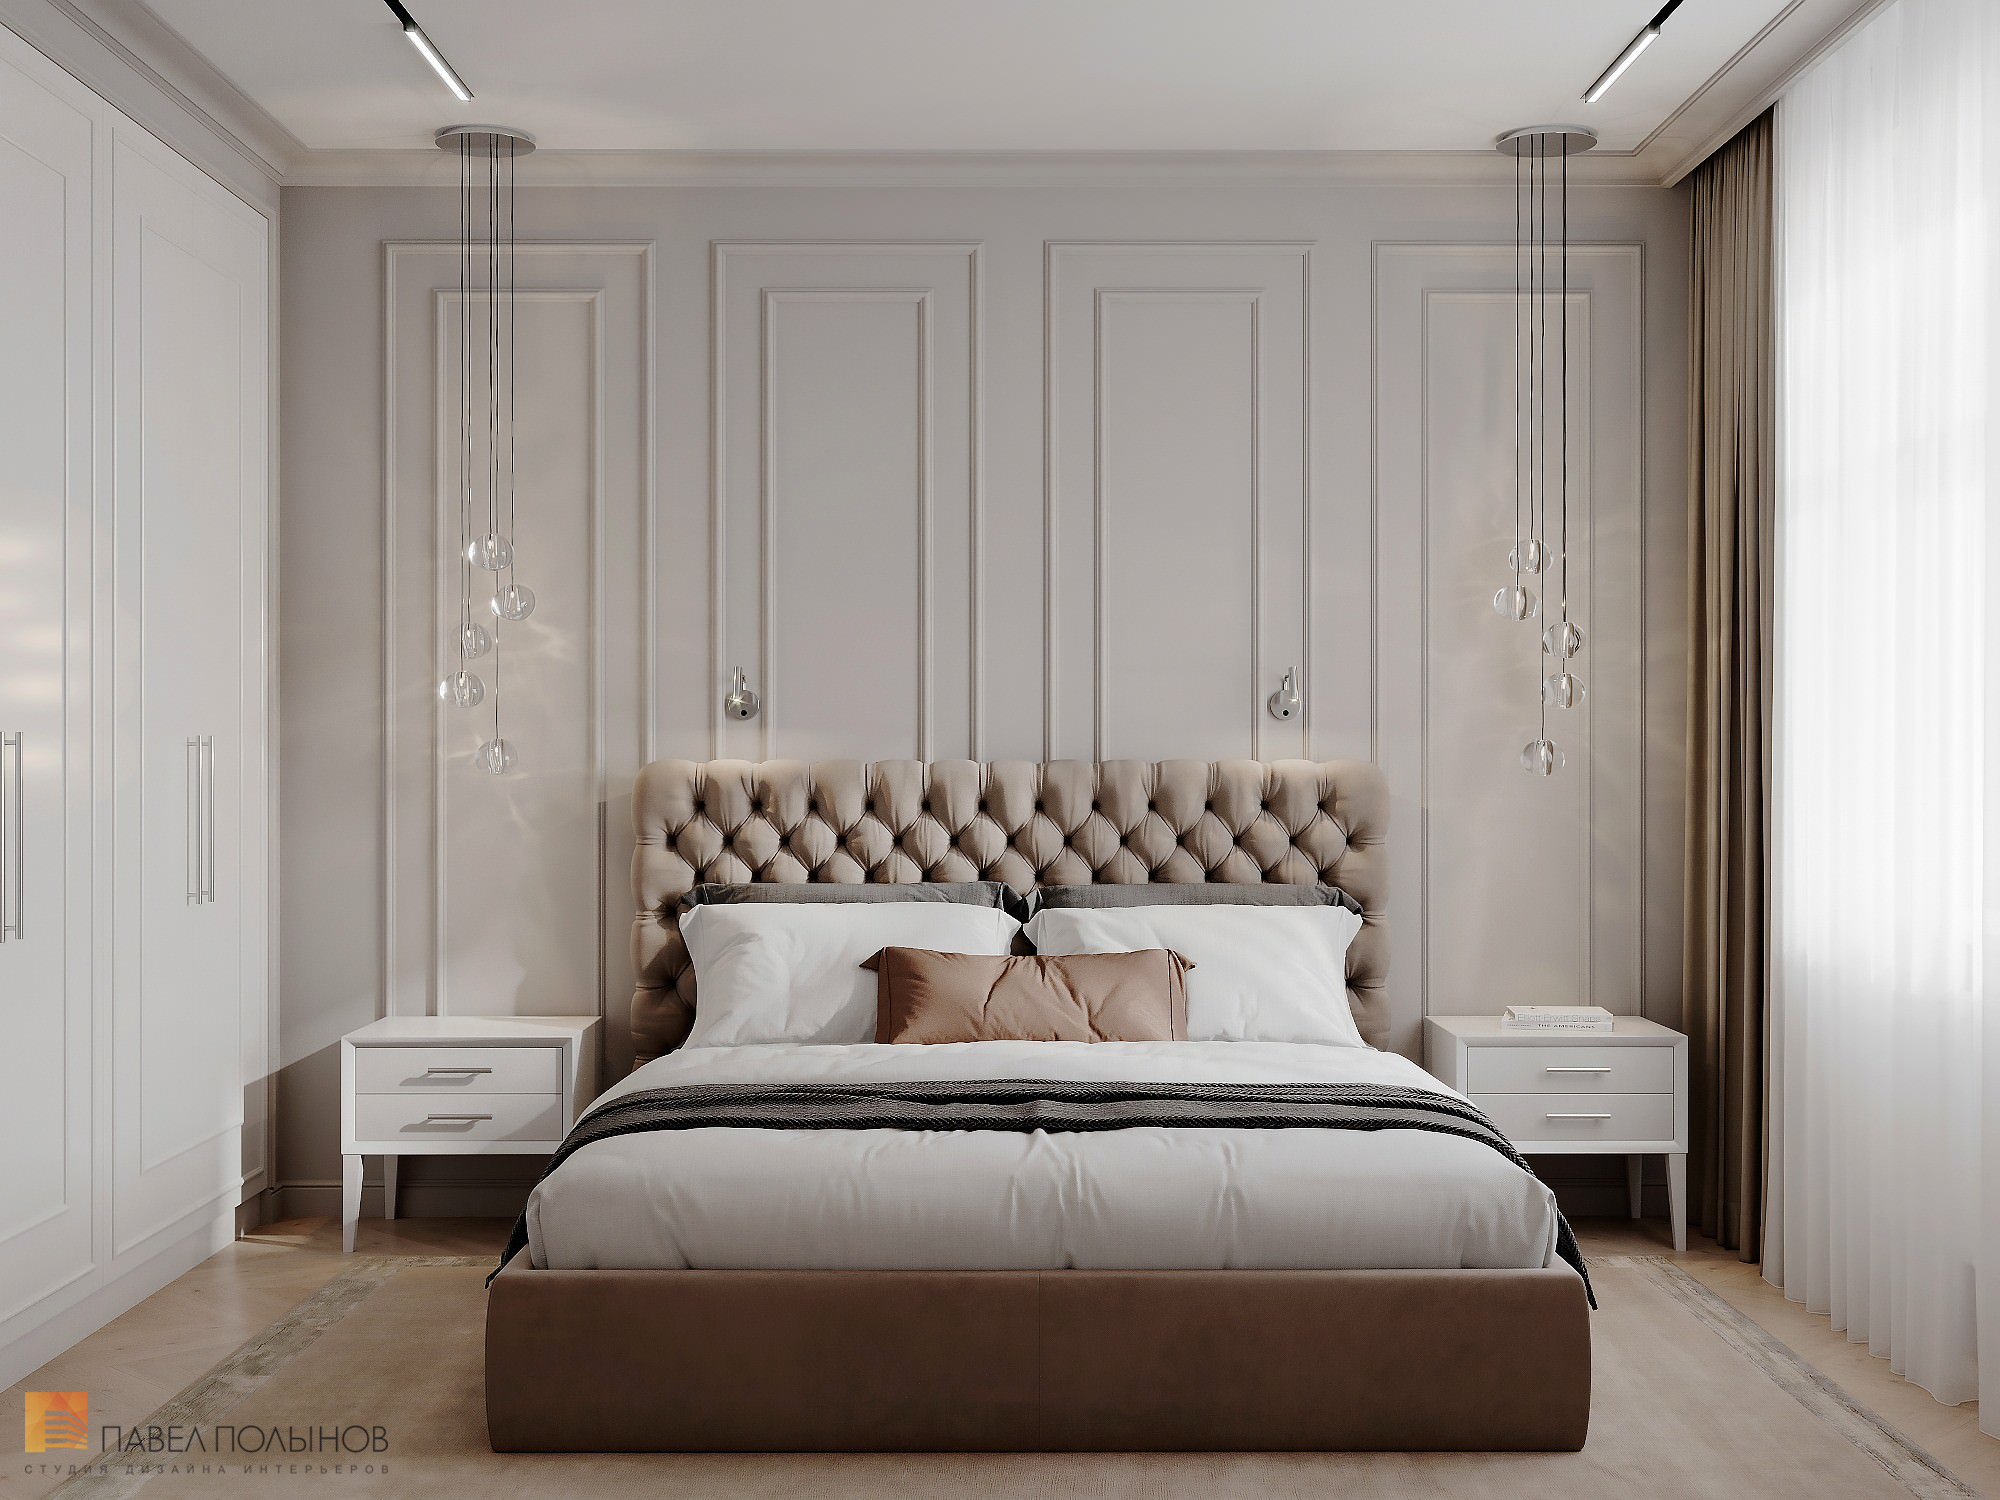 Фото дизайн спальни из проекта «Квартира в стиле неоклассики, ЖК «Алые Паруса», 124 кв.м.»